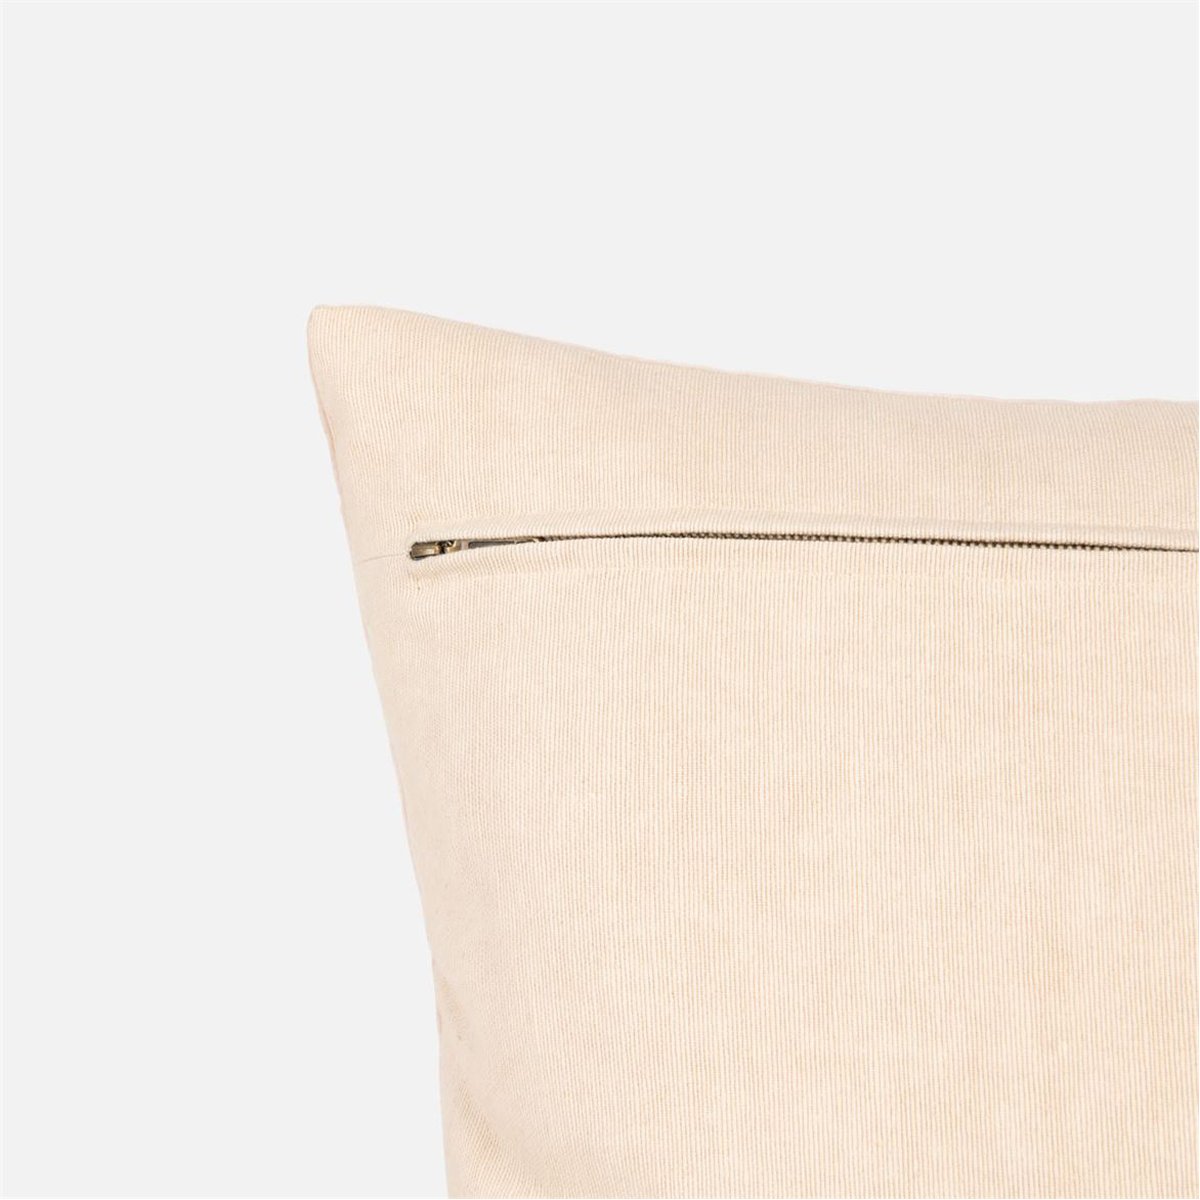 Made Goods Ari Velvet 18-Inch Pillows, Set of 2